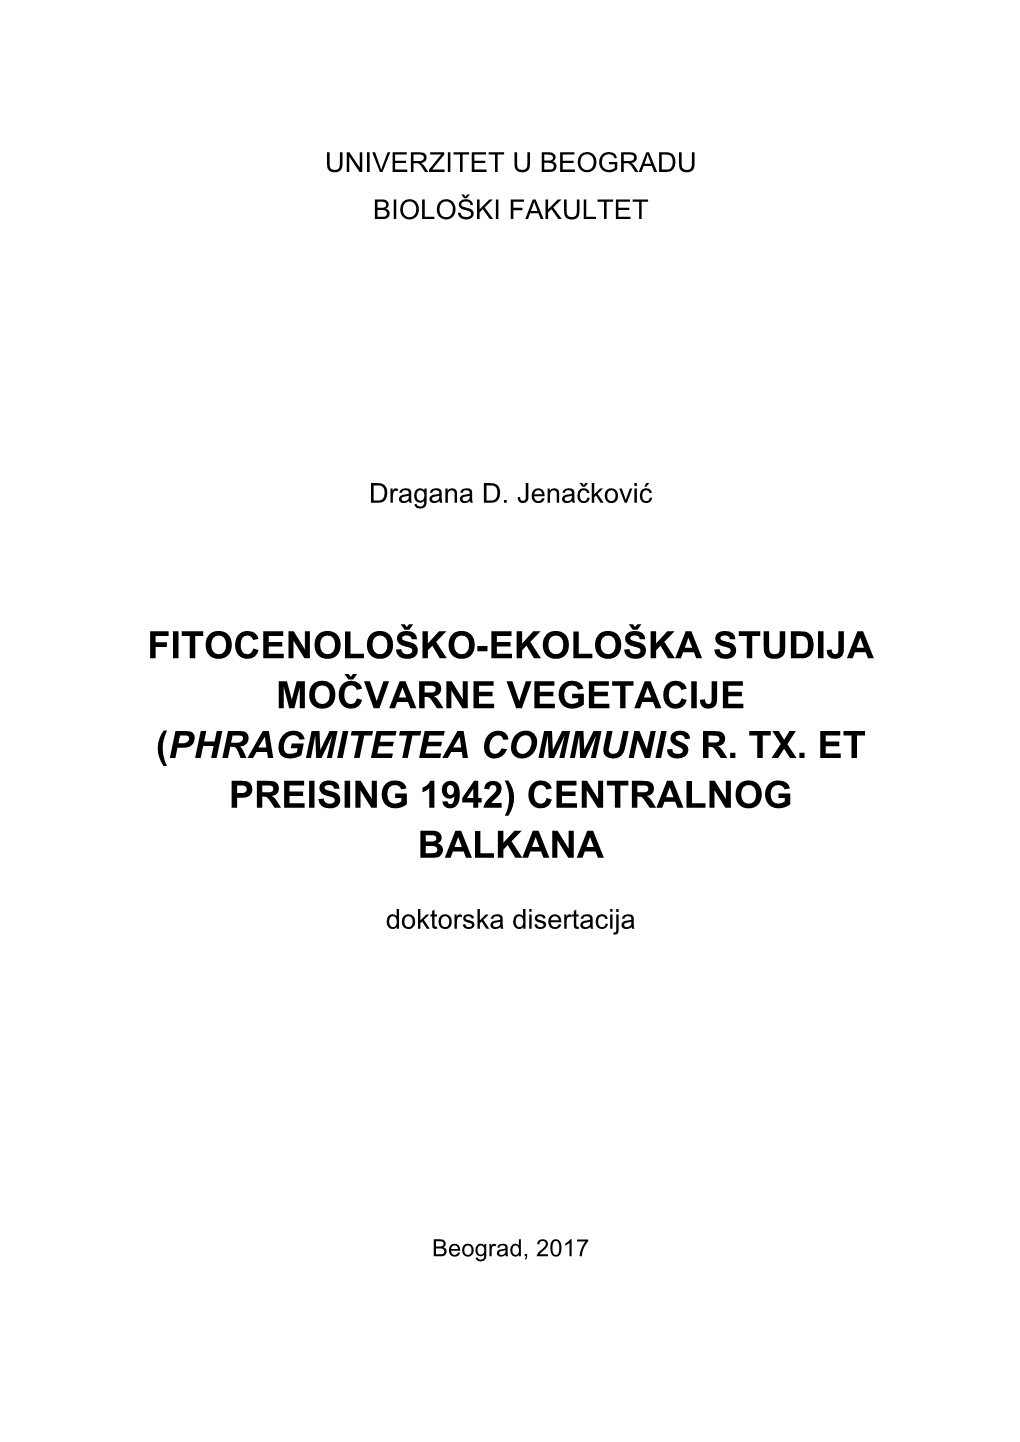 (Phragmitetea Communis R. Tx. Et Preising 1942) Centralnog Balkana